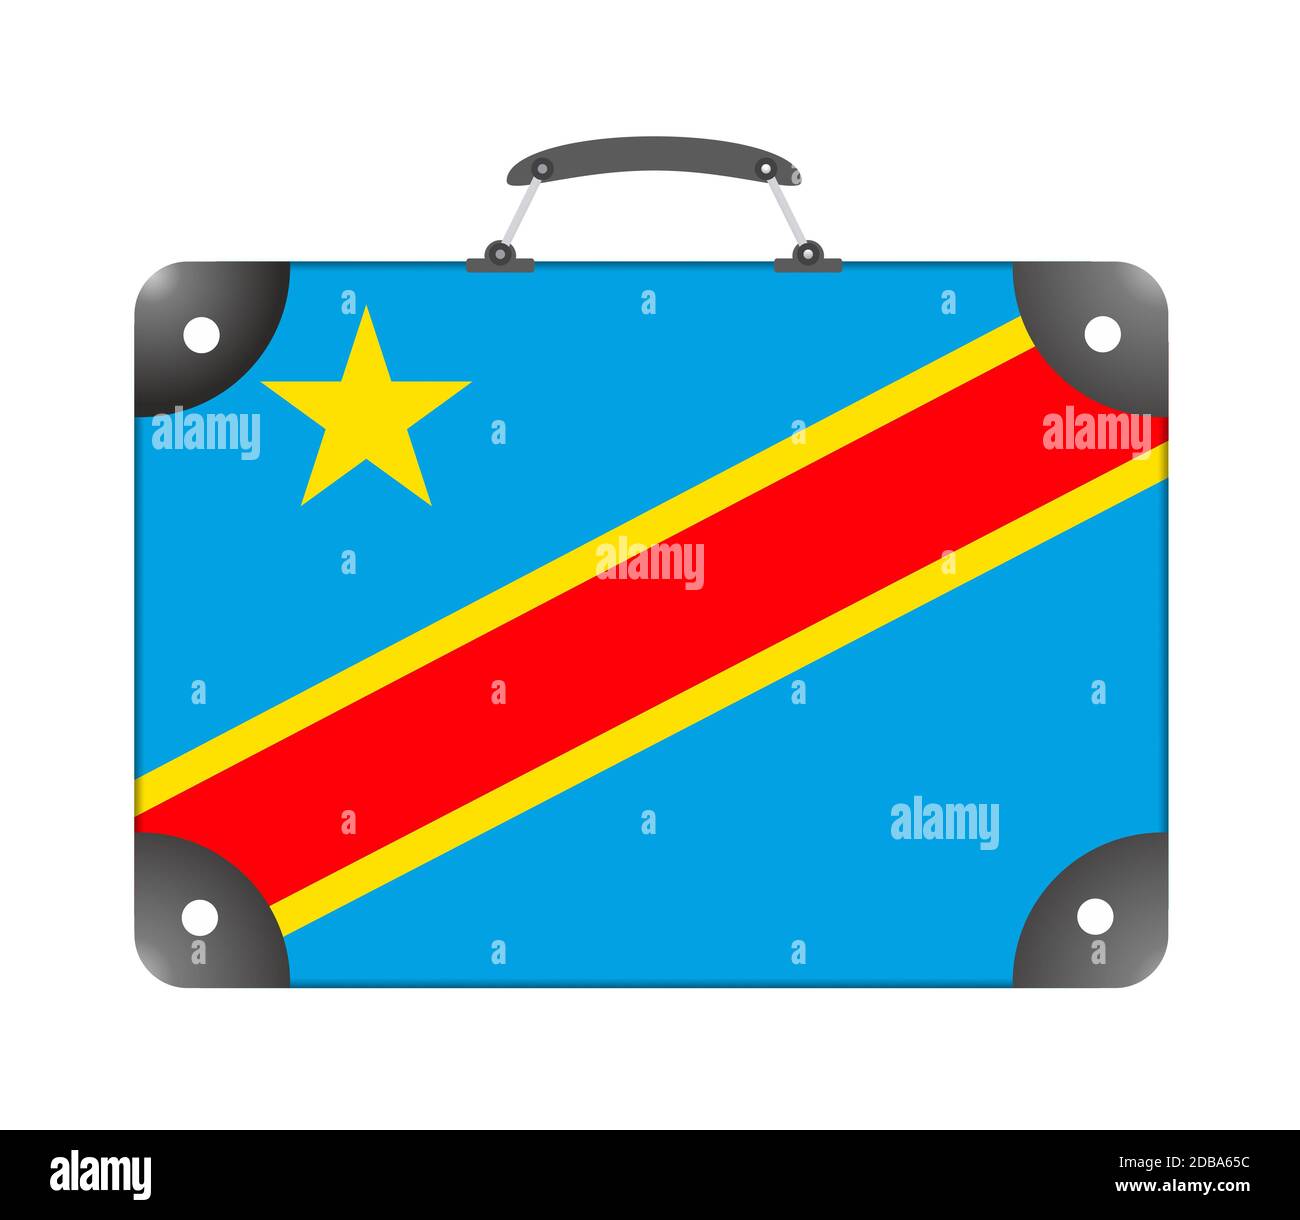 Flagge des Landes Demokratische Republik Kongo in Die Form eines Koffers für die Reise auf einem weißen Hintergrund - Abbildung Stockfoto